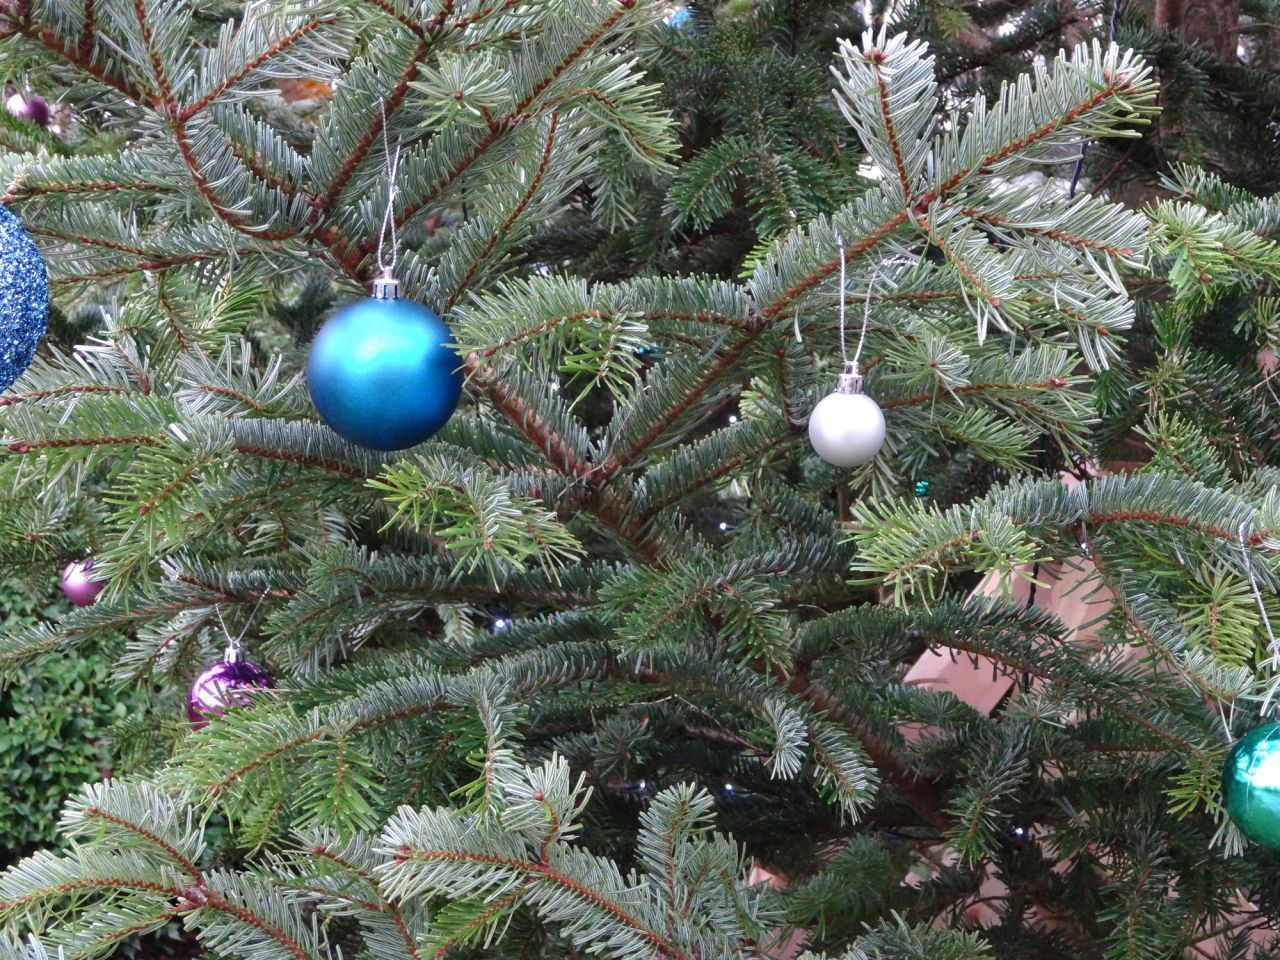 A Tännschen, please! In etwa jedem 2. Haushalt steht zu Weihnachten ein Tannenbaum. Nordmann-Tannen sind am beliebtesten.